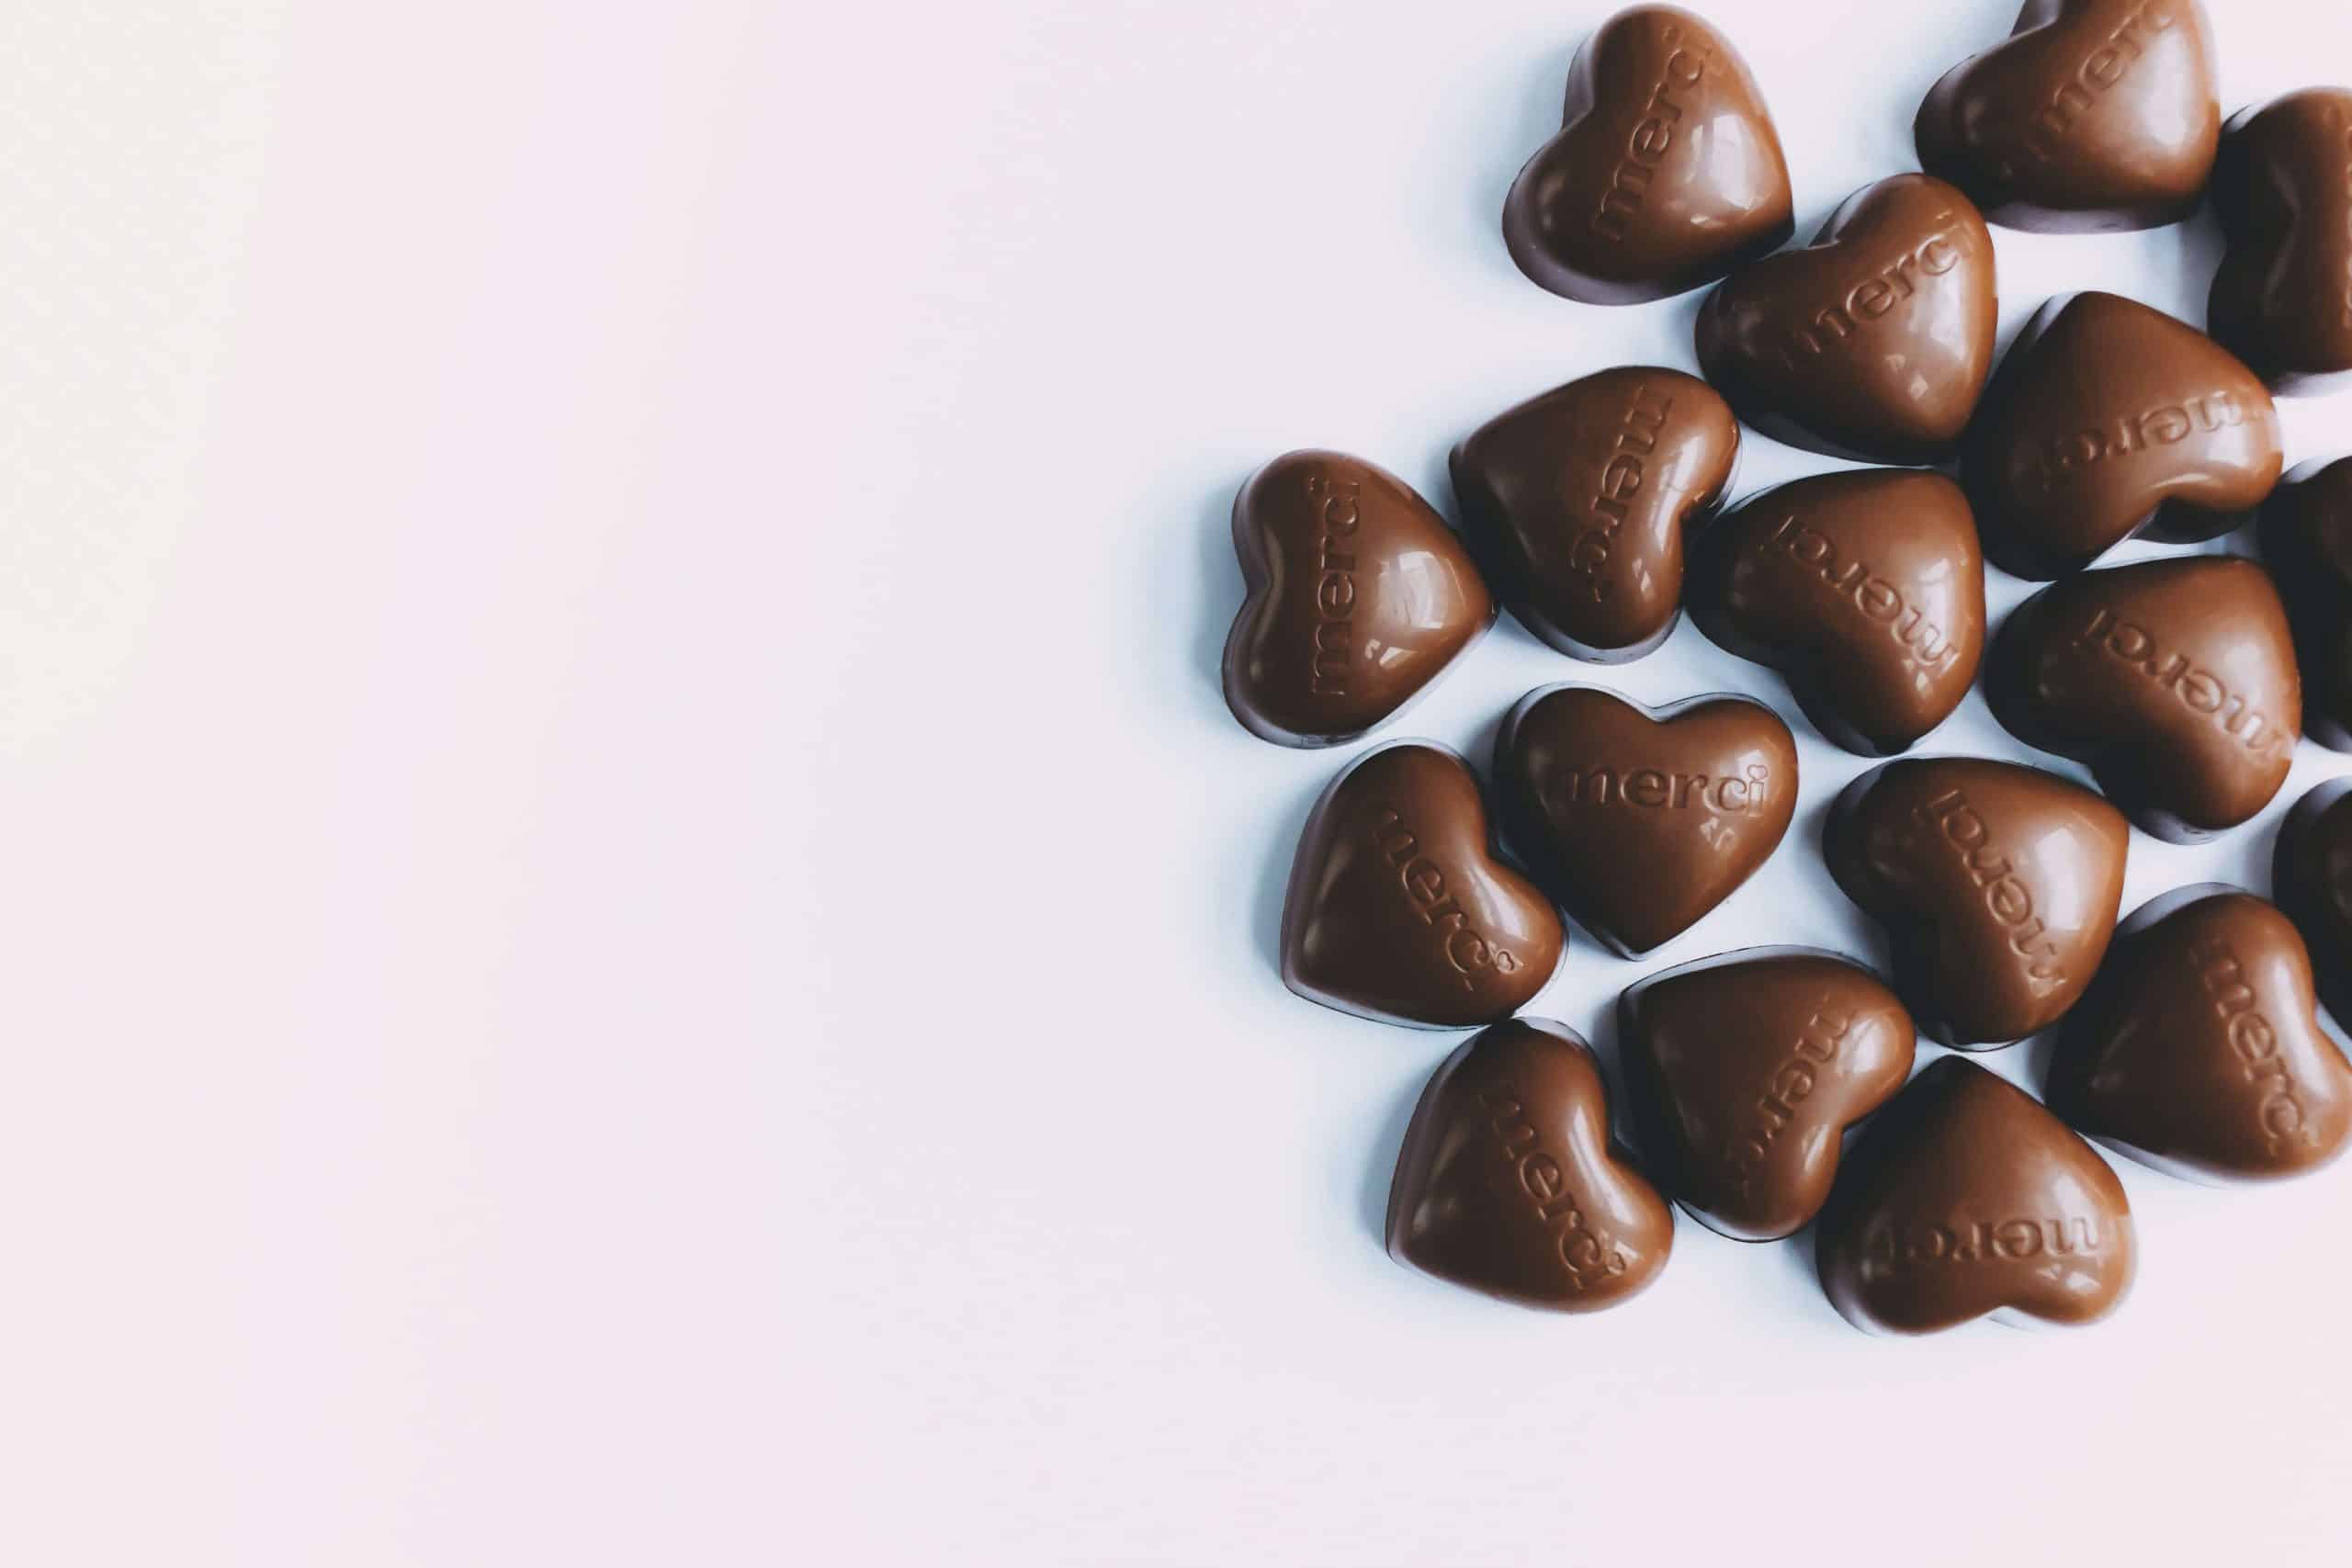 Bombons de chocolate em formato de coração, em um fundo branco.